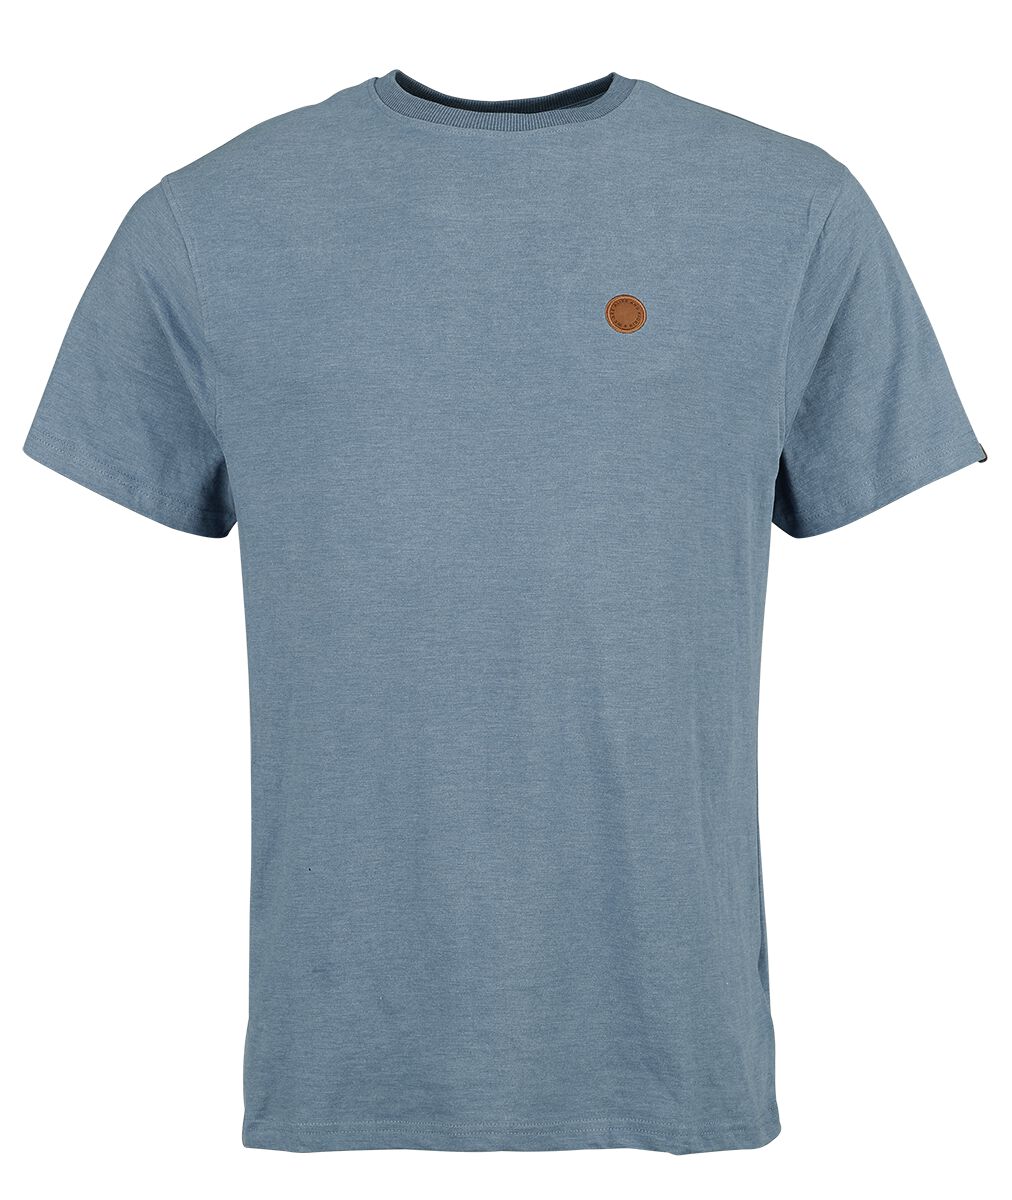 Alife and Kickin T-Shirt - MaddoxAK A Shirt - S bis XXL - für Männer - Größe L - blau